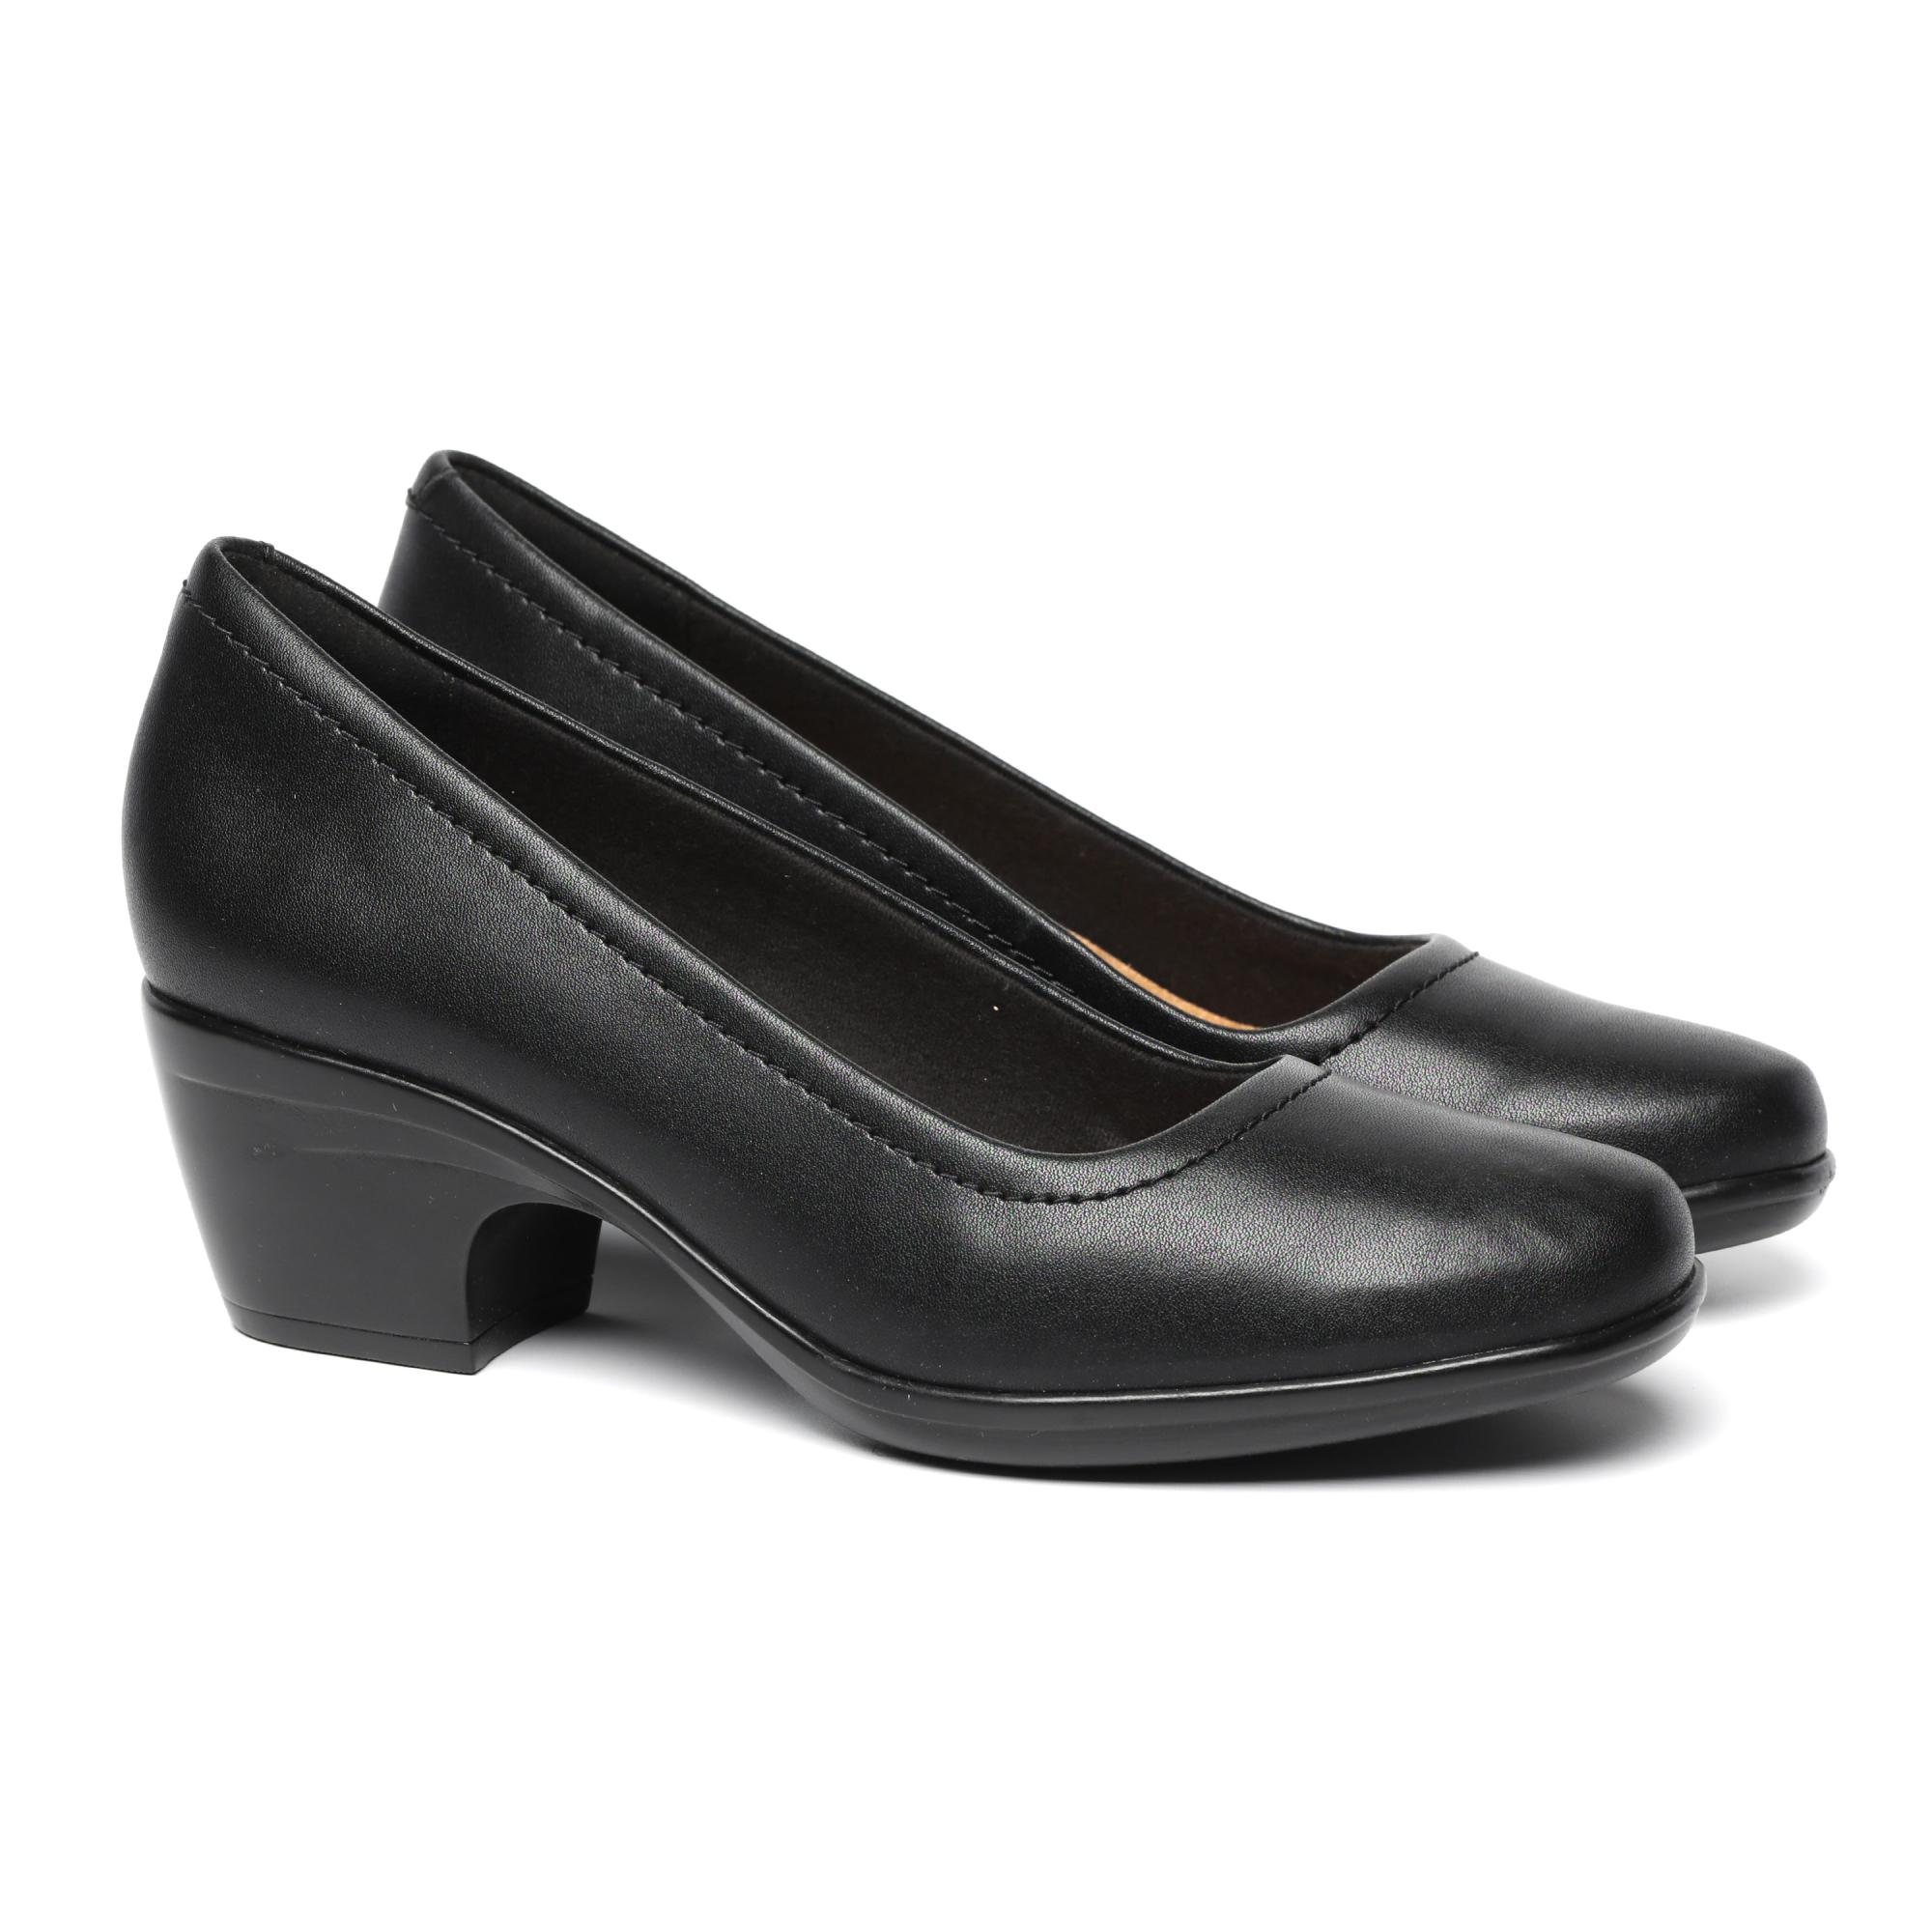 Женские туфли-лодочки Clarks, черные, цвет черный, размер 39